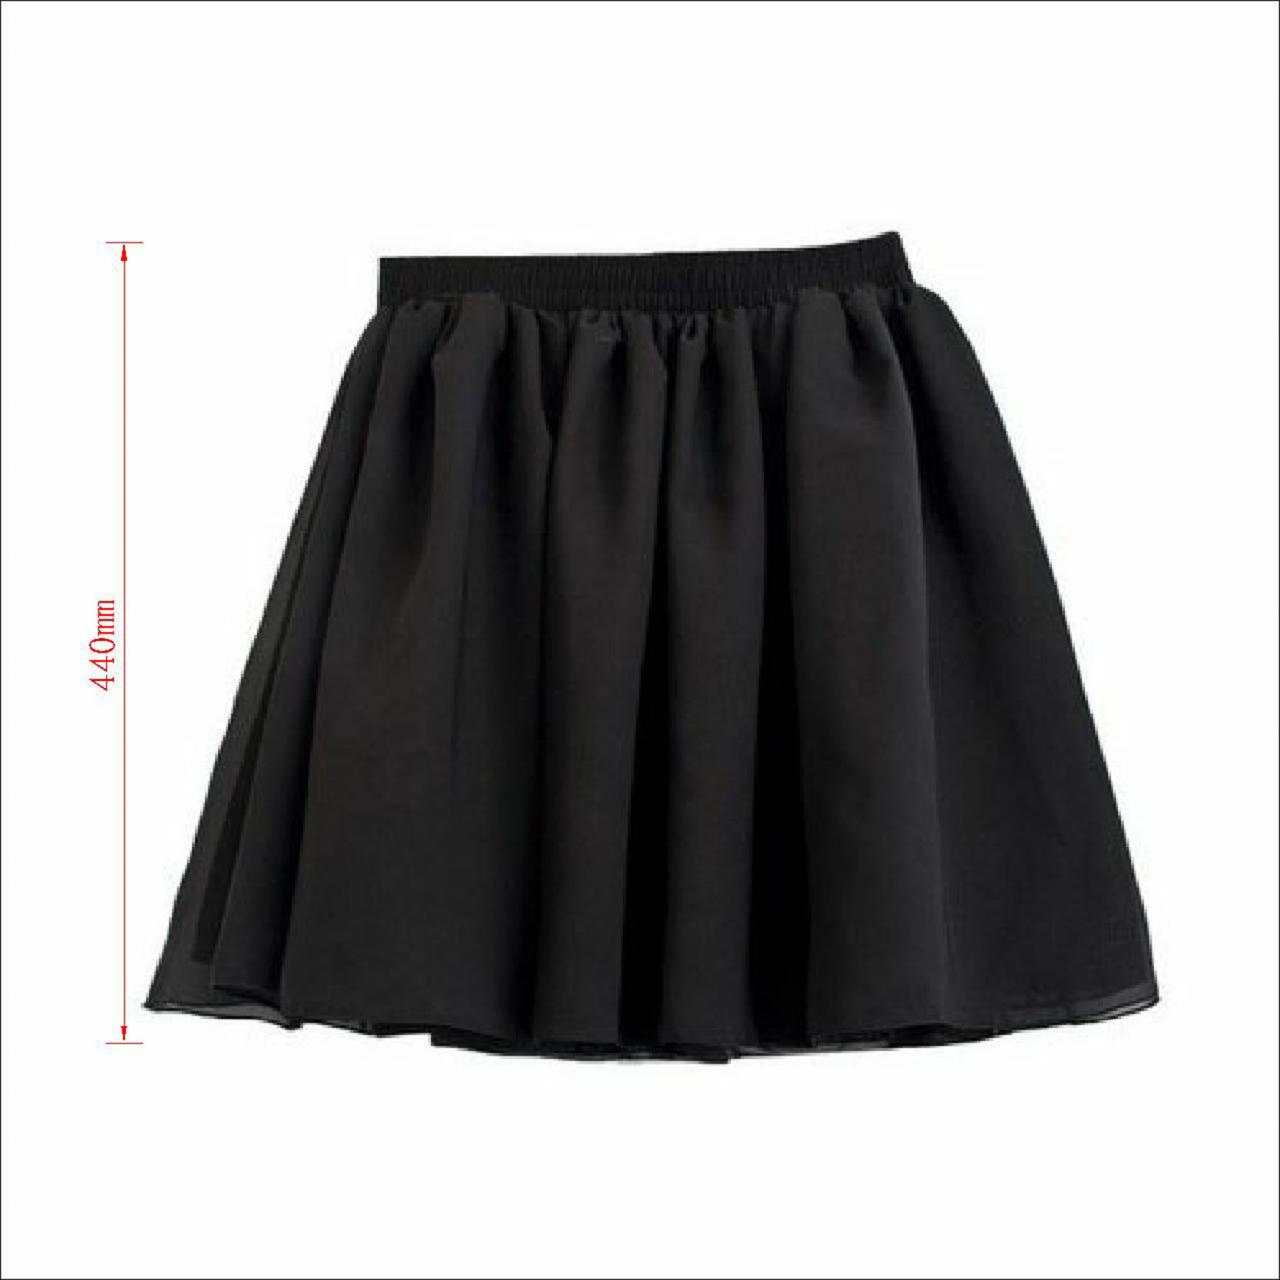 Vogue Lady Retro High Waist Pleated Double Layer Chiffon Short Mini Skirts Dress